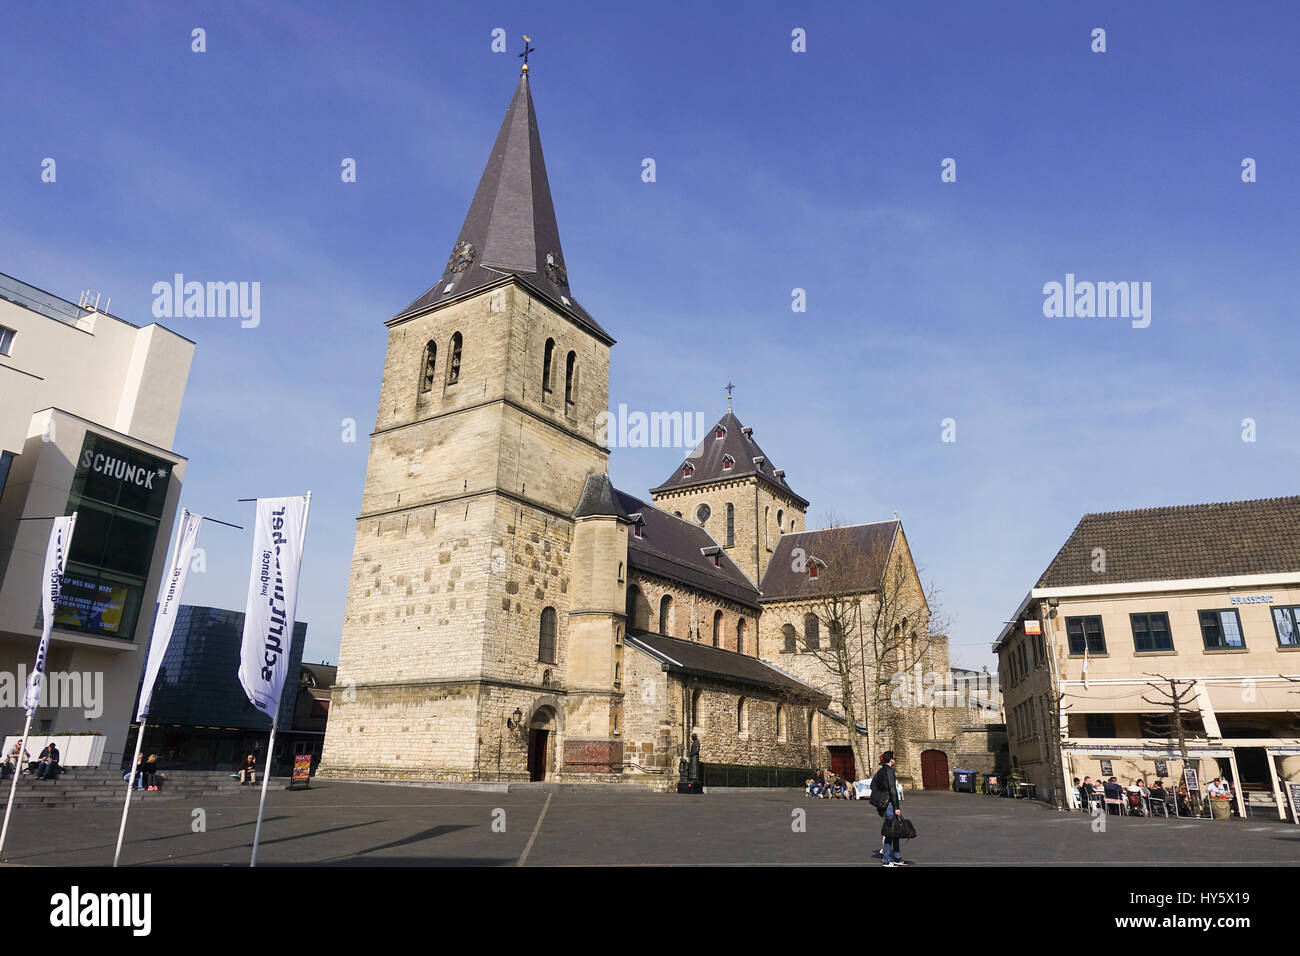 The Pancratiuskerk, St. Pancras Church, Roman Catholic church in Heerlen, Limburg, Netherlands. Stock Photo